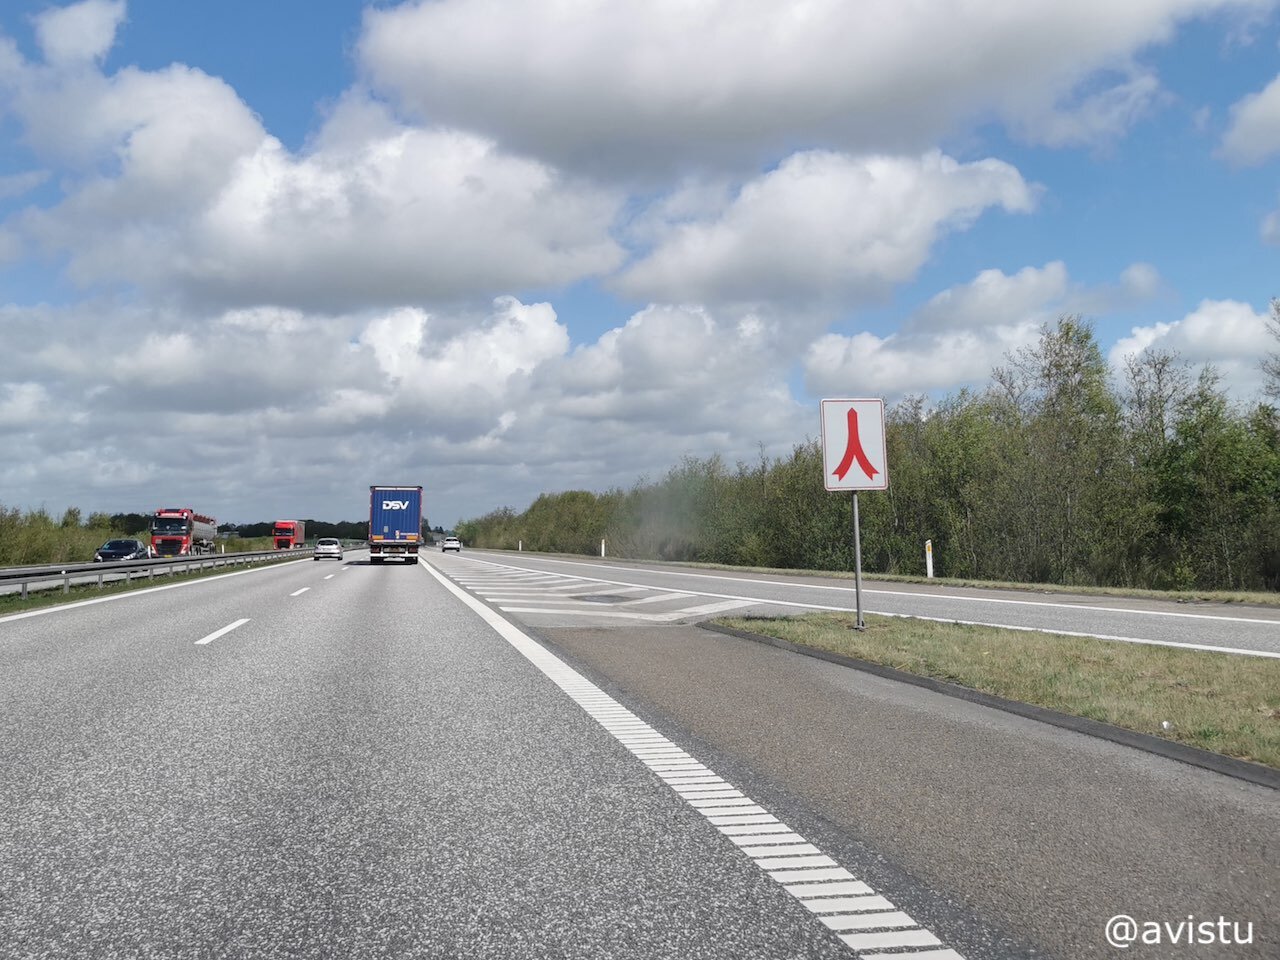 Señal de incorporación en carretera de Dinamarca